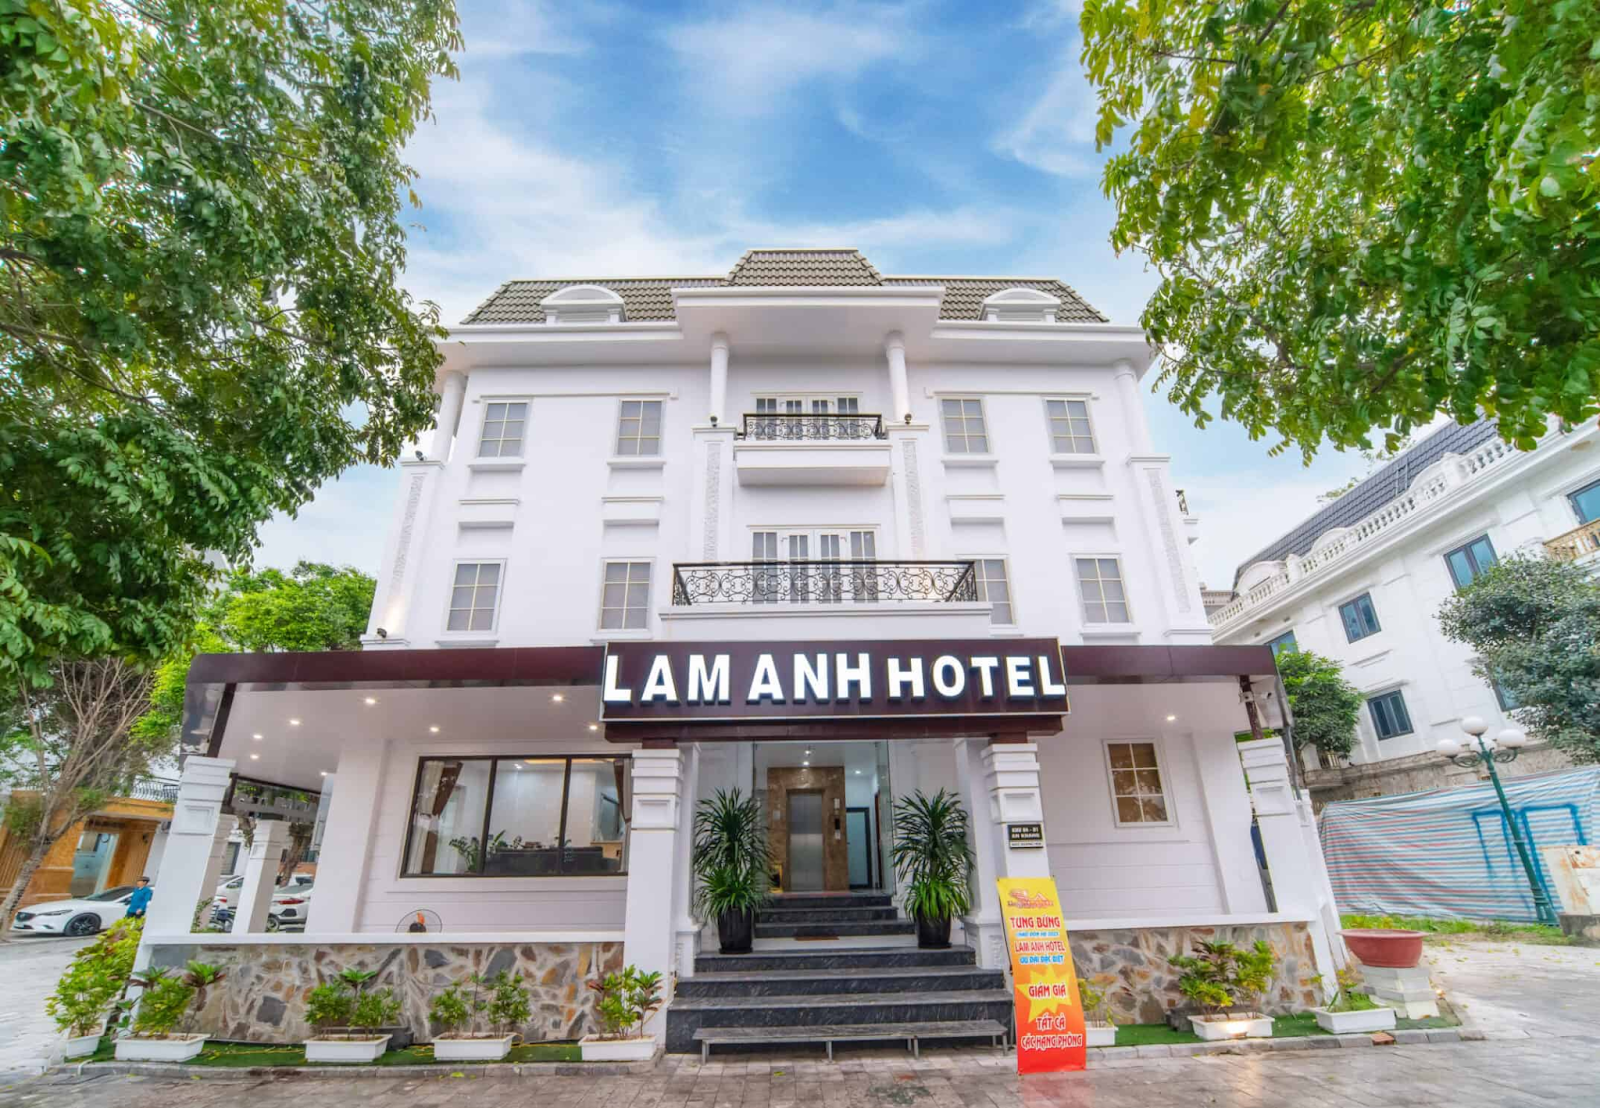 Lam Anh Hotel - Nhà nghỉ qua đêm ở Hà Nội chất lượng, giá tốt